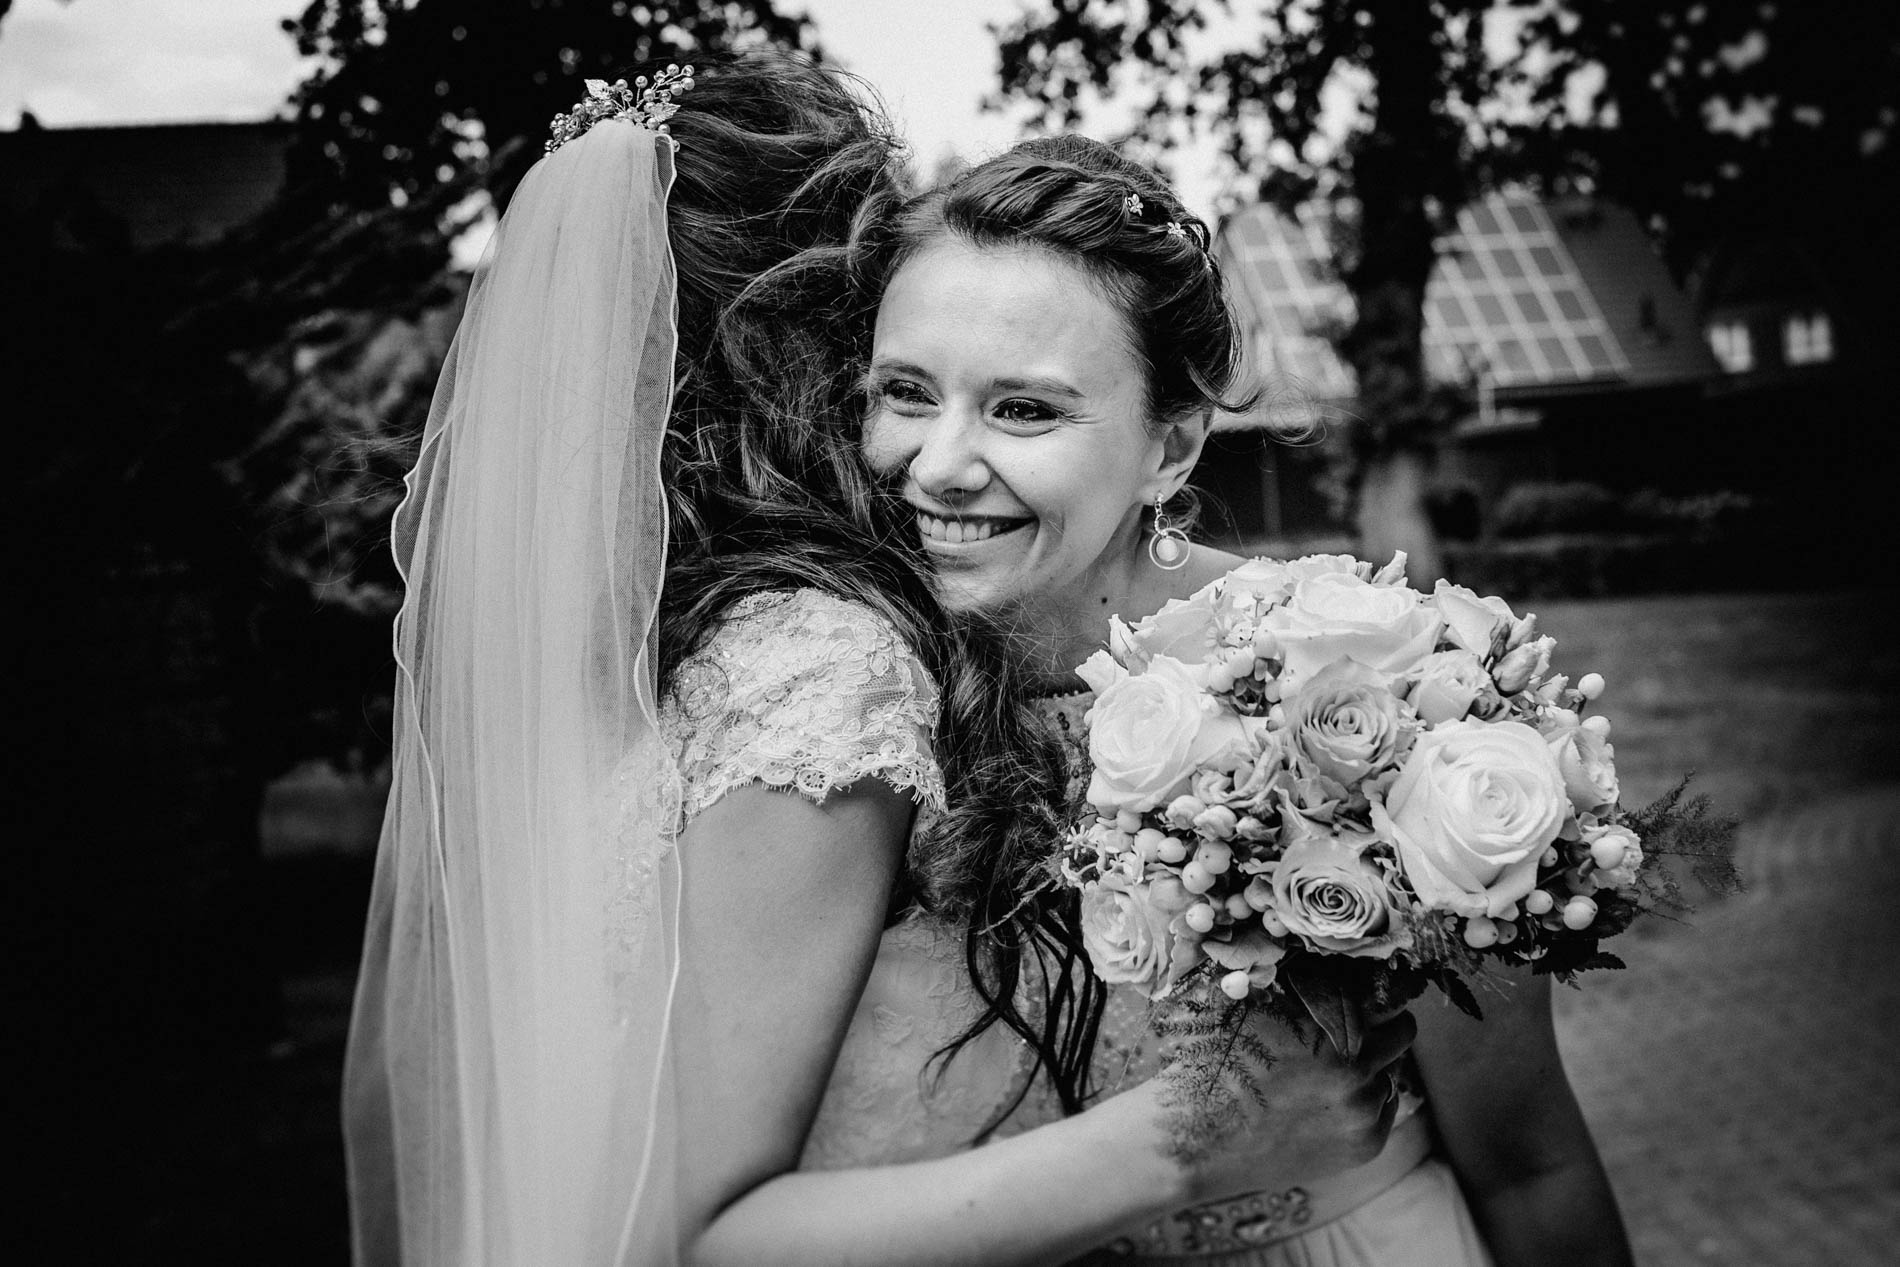 Hochzeitsfotograf für kreative und emotionale Hochzeitsportraits & Hochzeitsreportagen in Jork